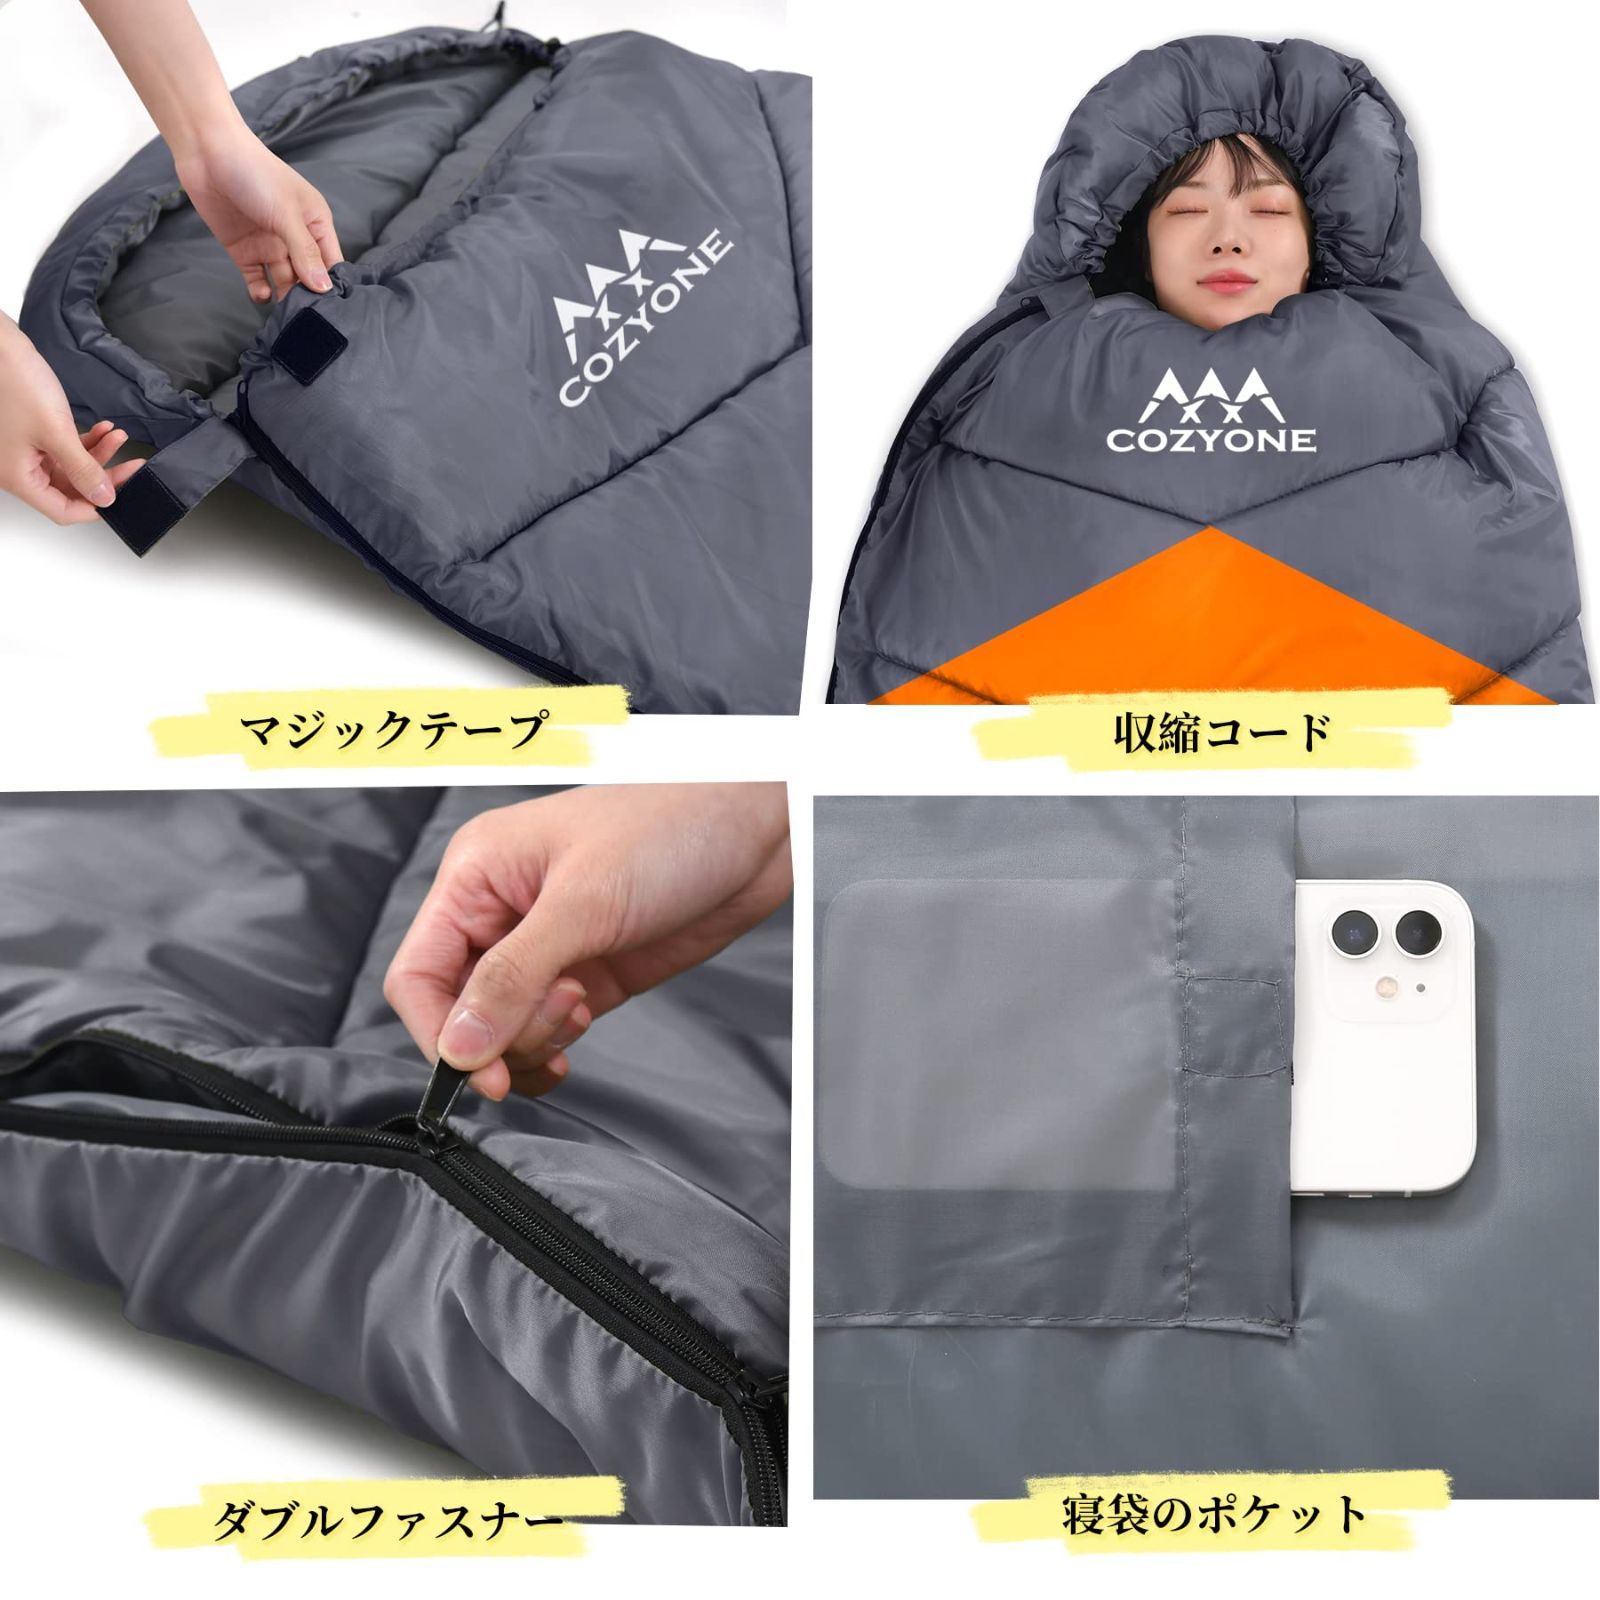 【色: ブラック】COSMUSTY 寝袋 シュラフ 封筒型 軽量 コンパクト 車